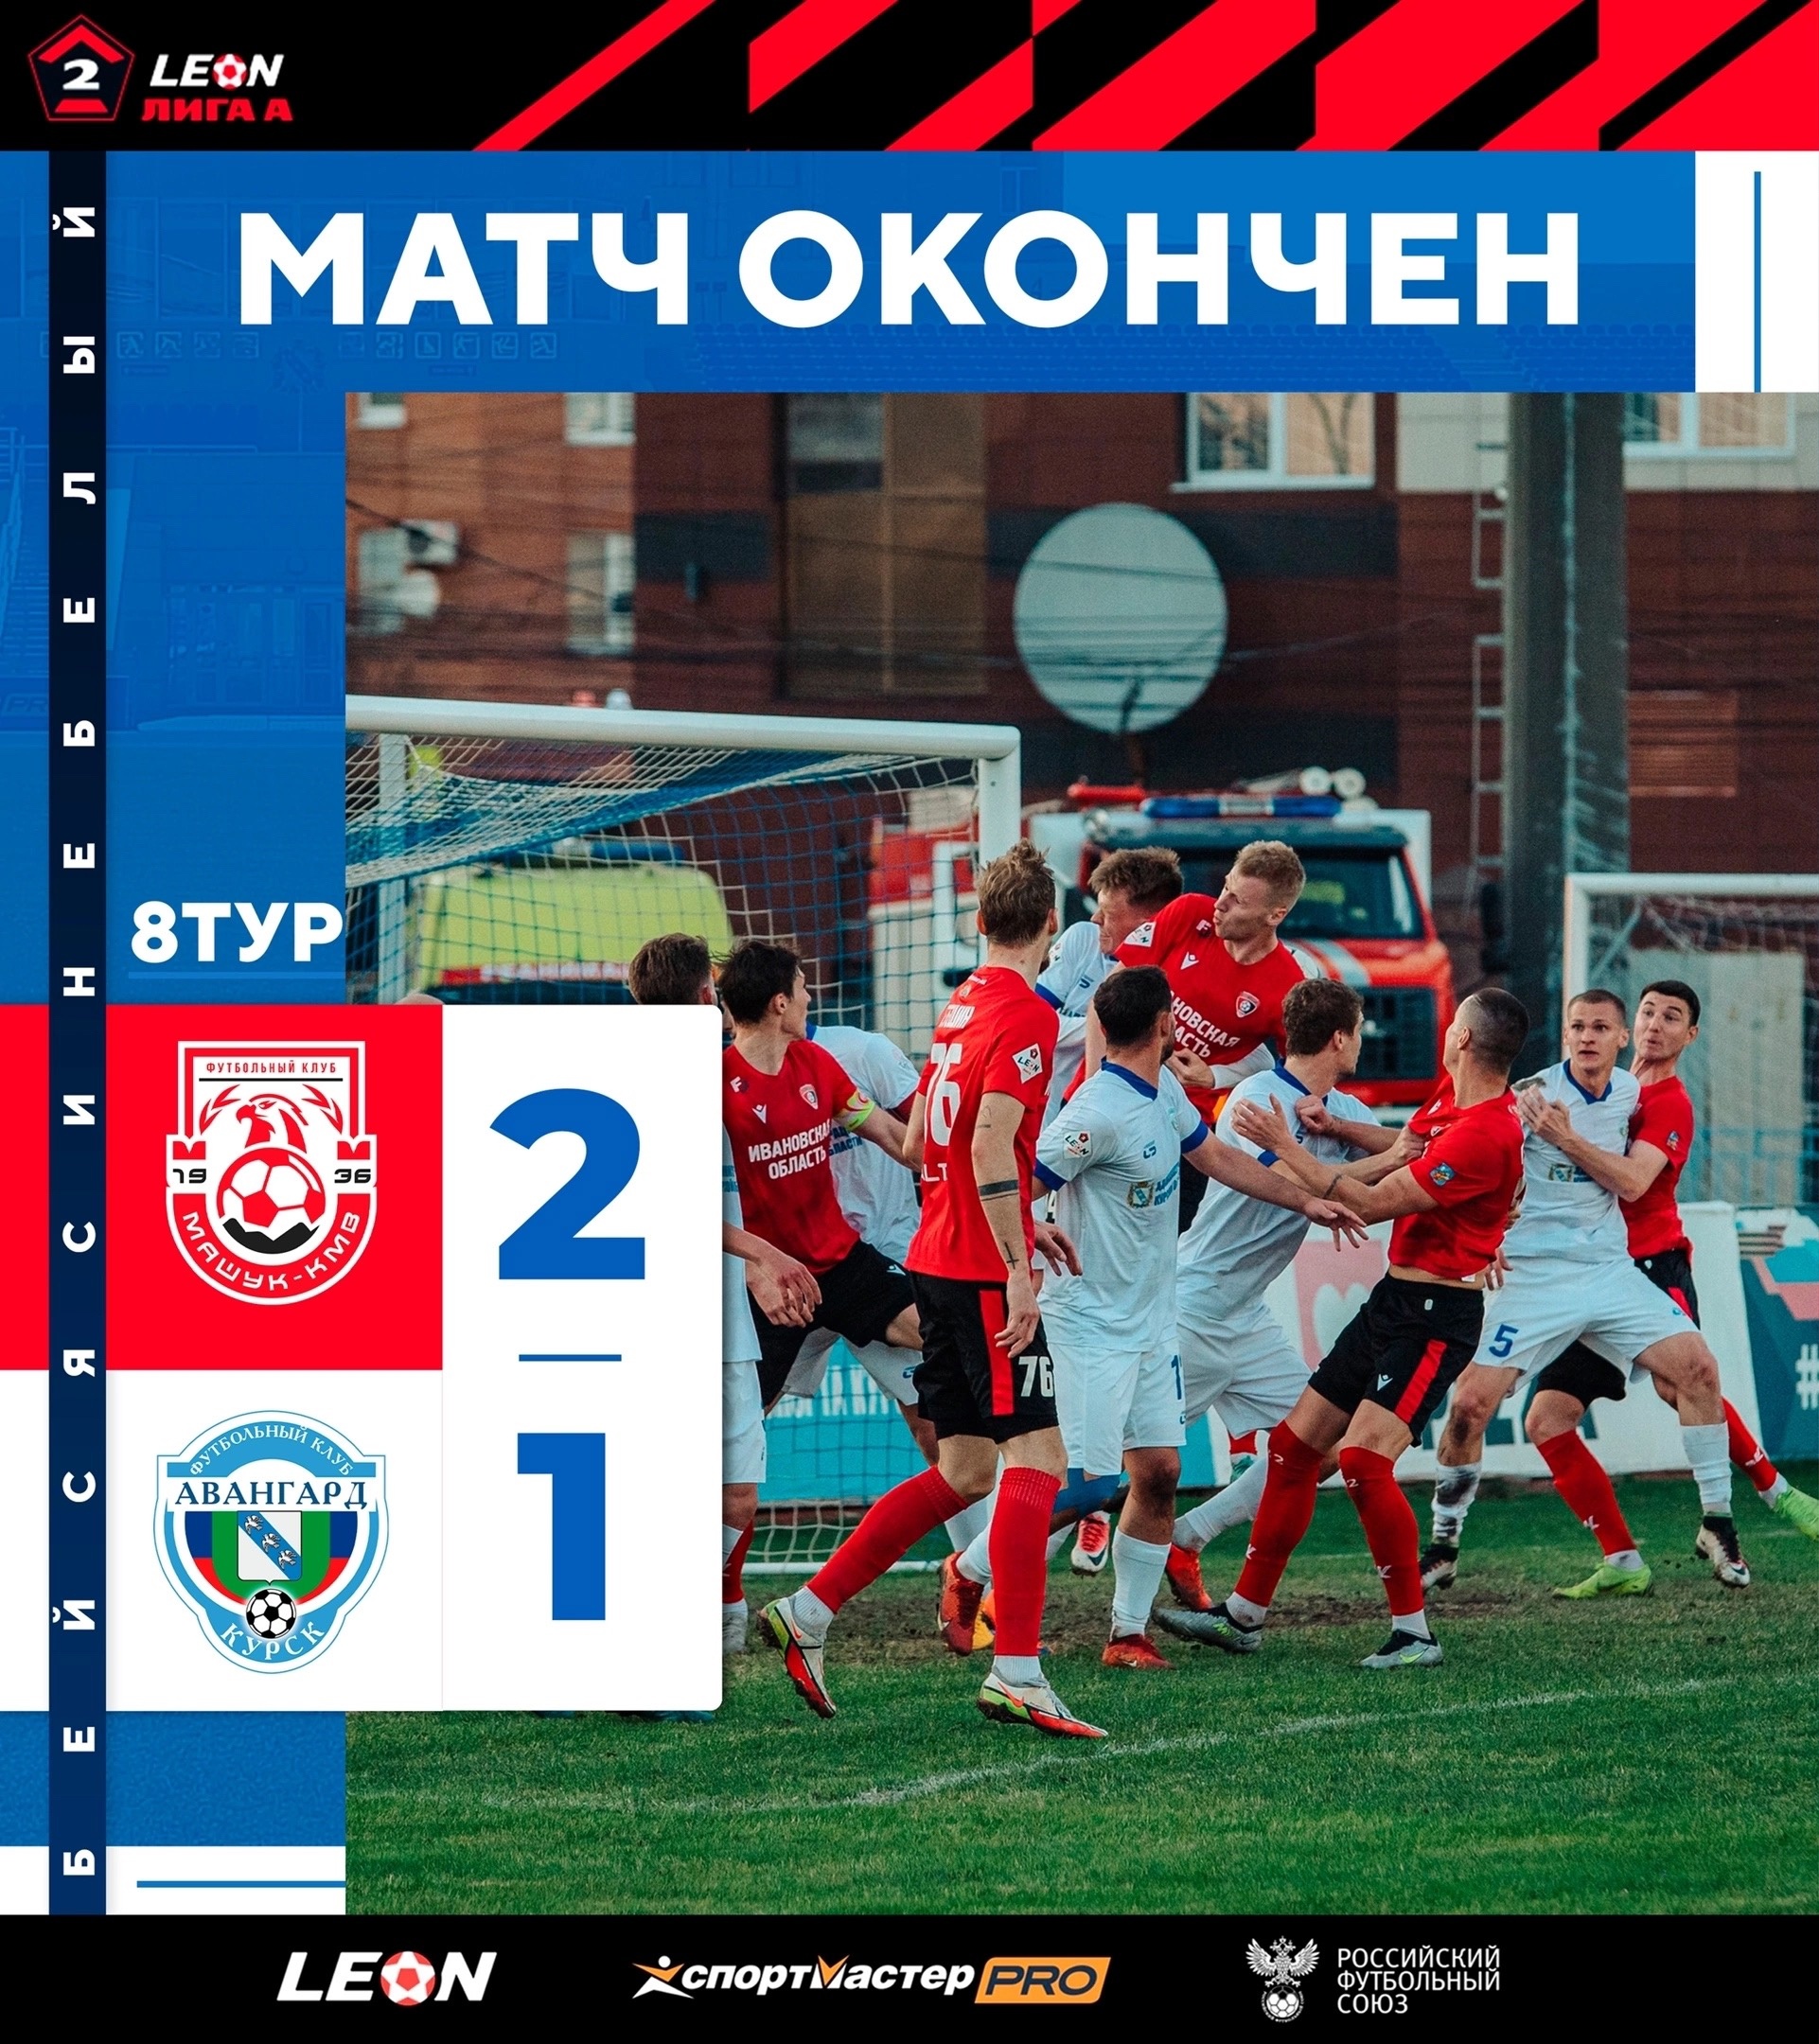 Курская футбольная команда «Авангард» проиграла пятигорскому «Машук-КМВ»